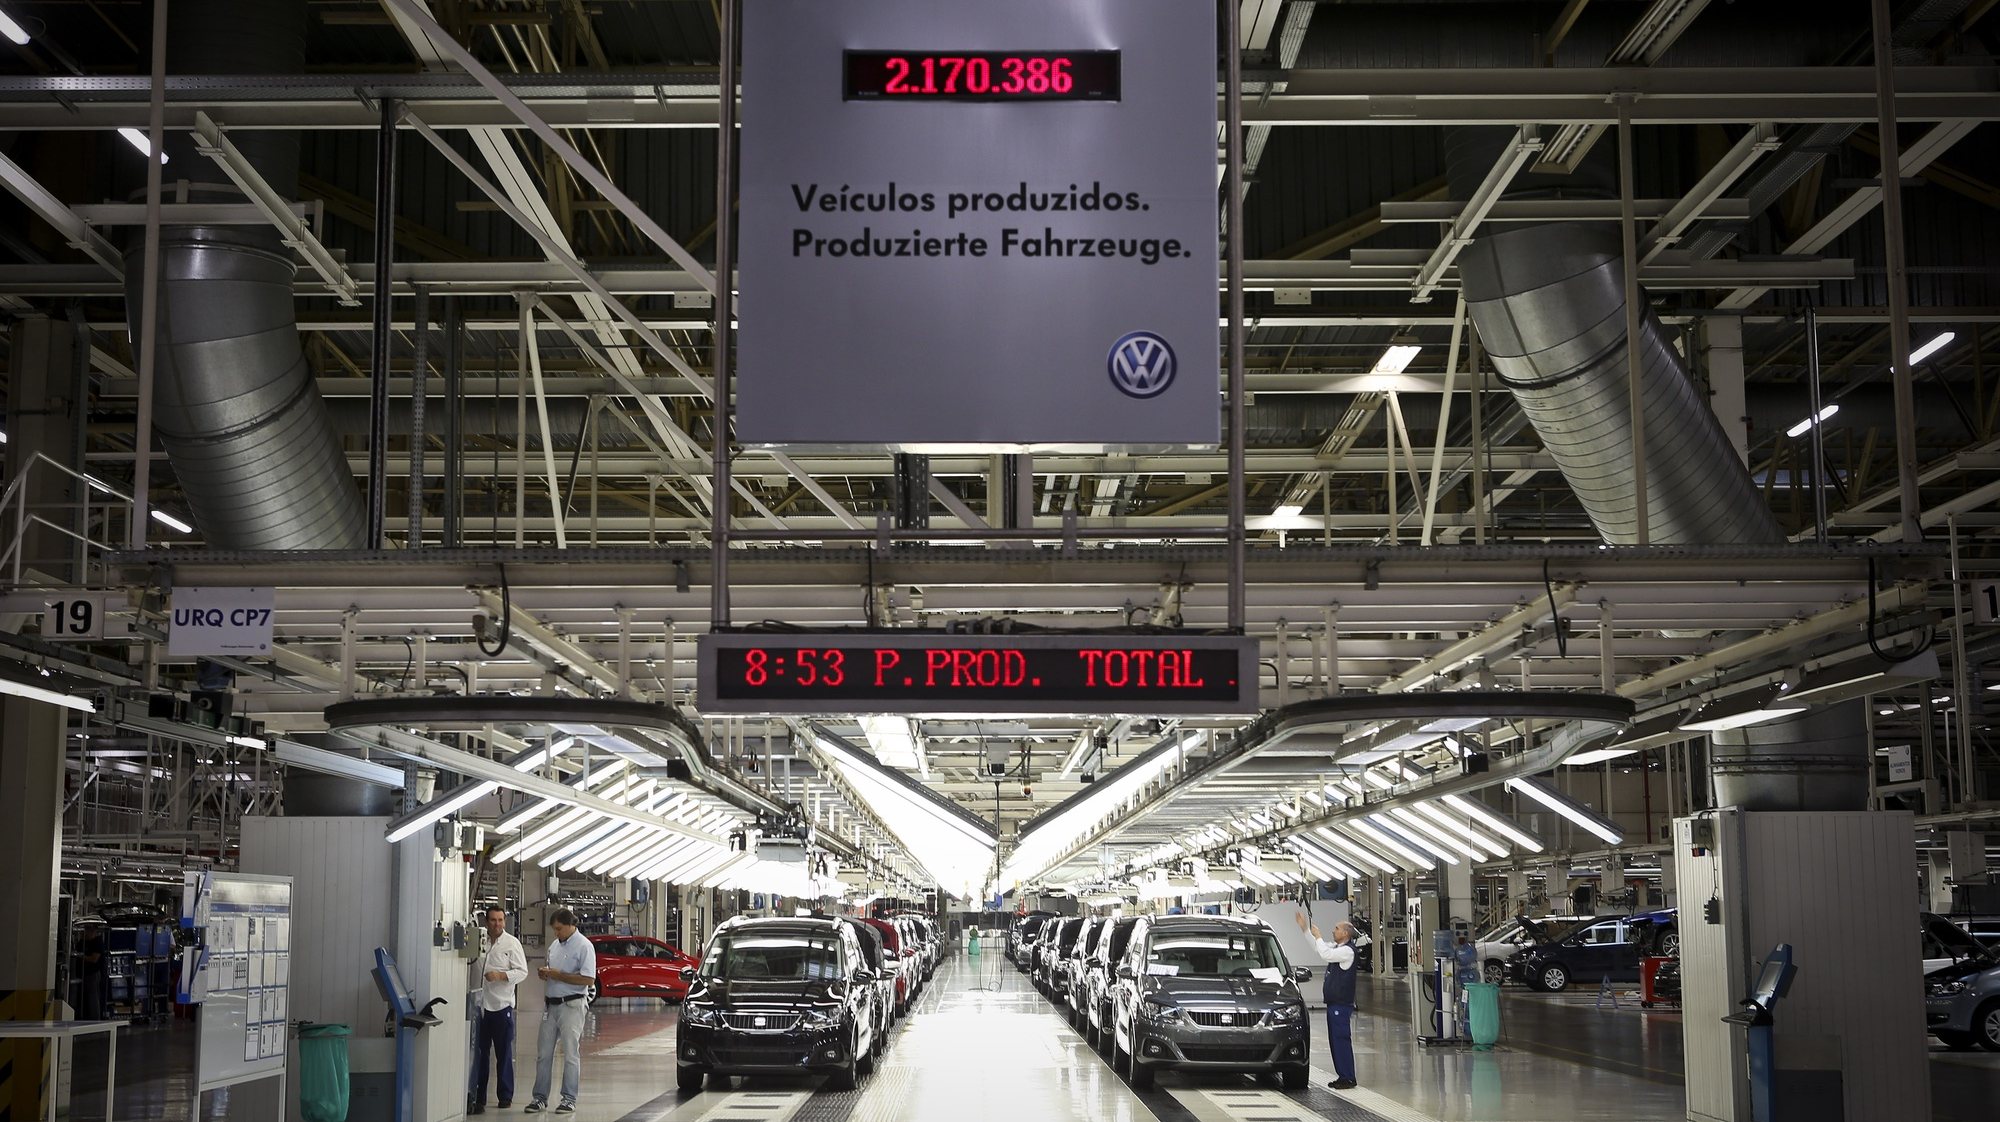 Sáida de veículos produzidos na fábrica Autoeuropa do grupo alemão Volkswagen numa altura em que se celebram os 20 anos do início da produção da Autoeuropa em Portugal, em Palmela, concelho de Setúbal, 26 de abril de 2015. (ACOMPANHA TEXTO) MÁRIO CRUZ/LUSA